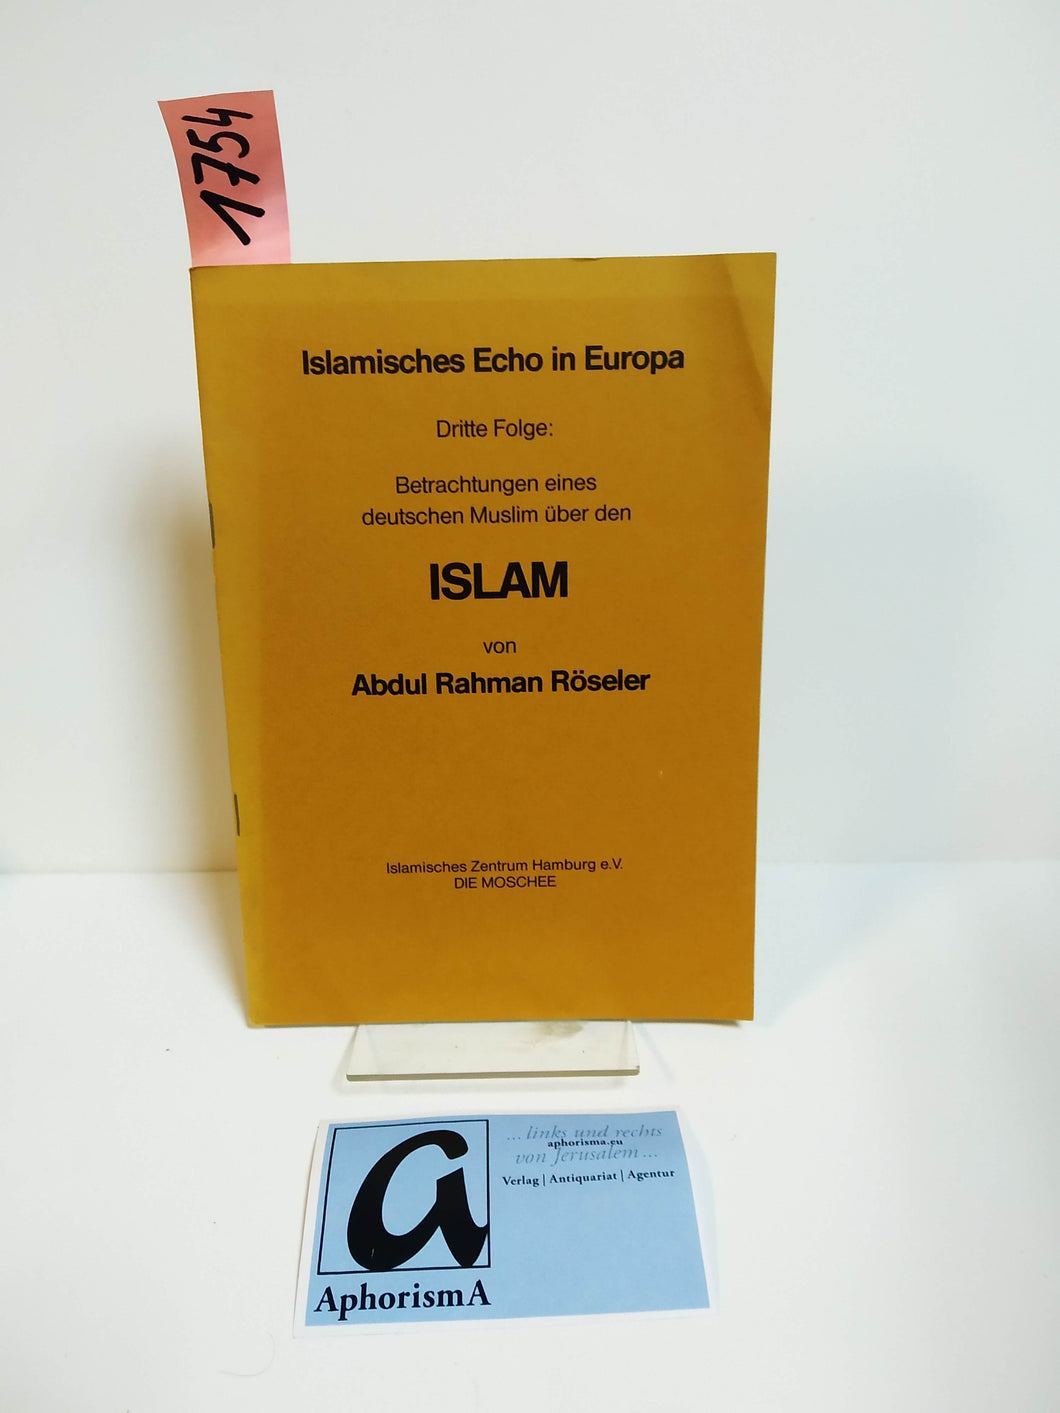 Betrachtungen eines deutschen Muslim über den Islam